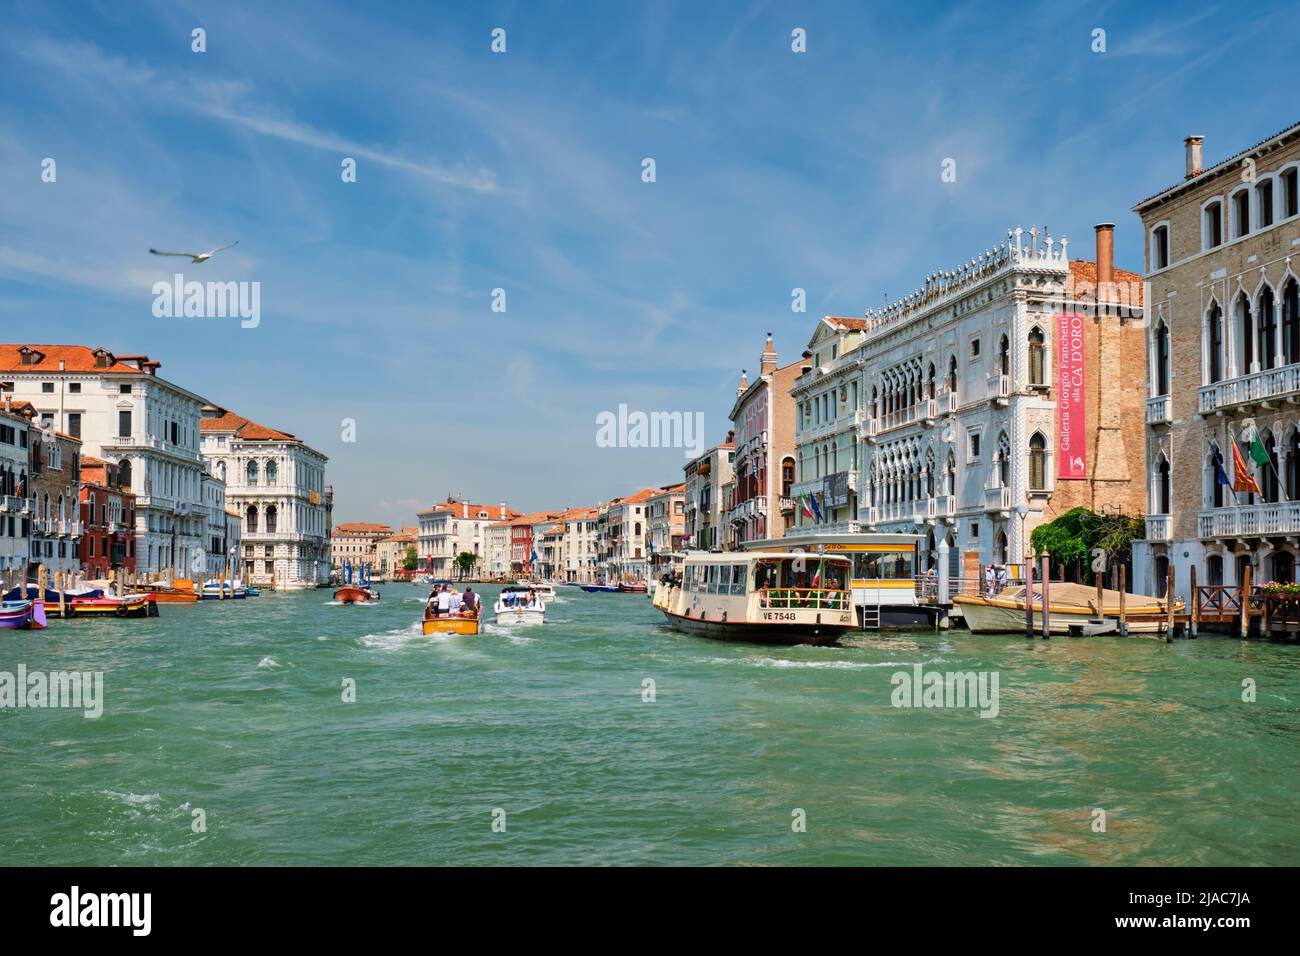 Boats and gondolas on Grand Canal, Venice, Italy Stock Photo